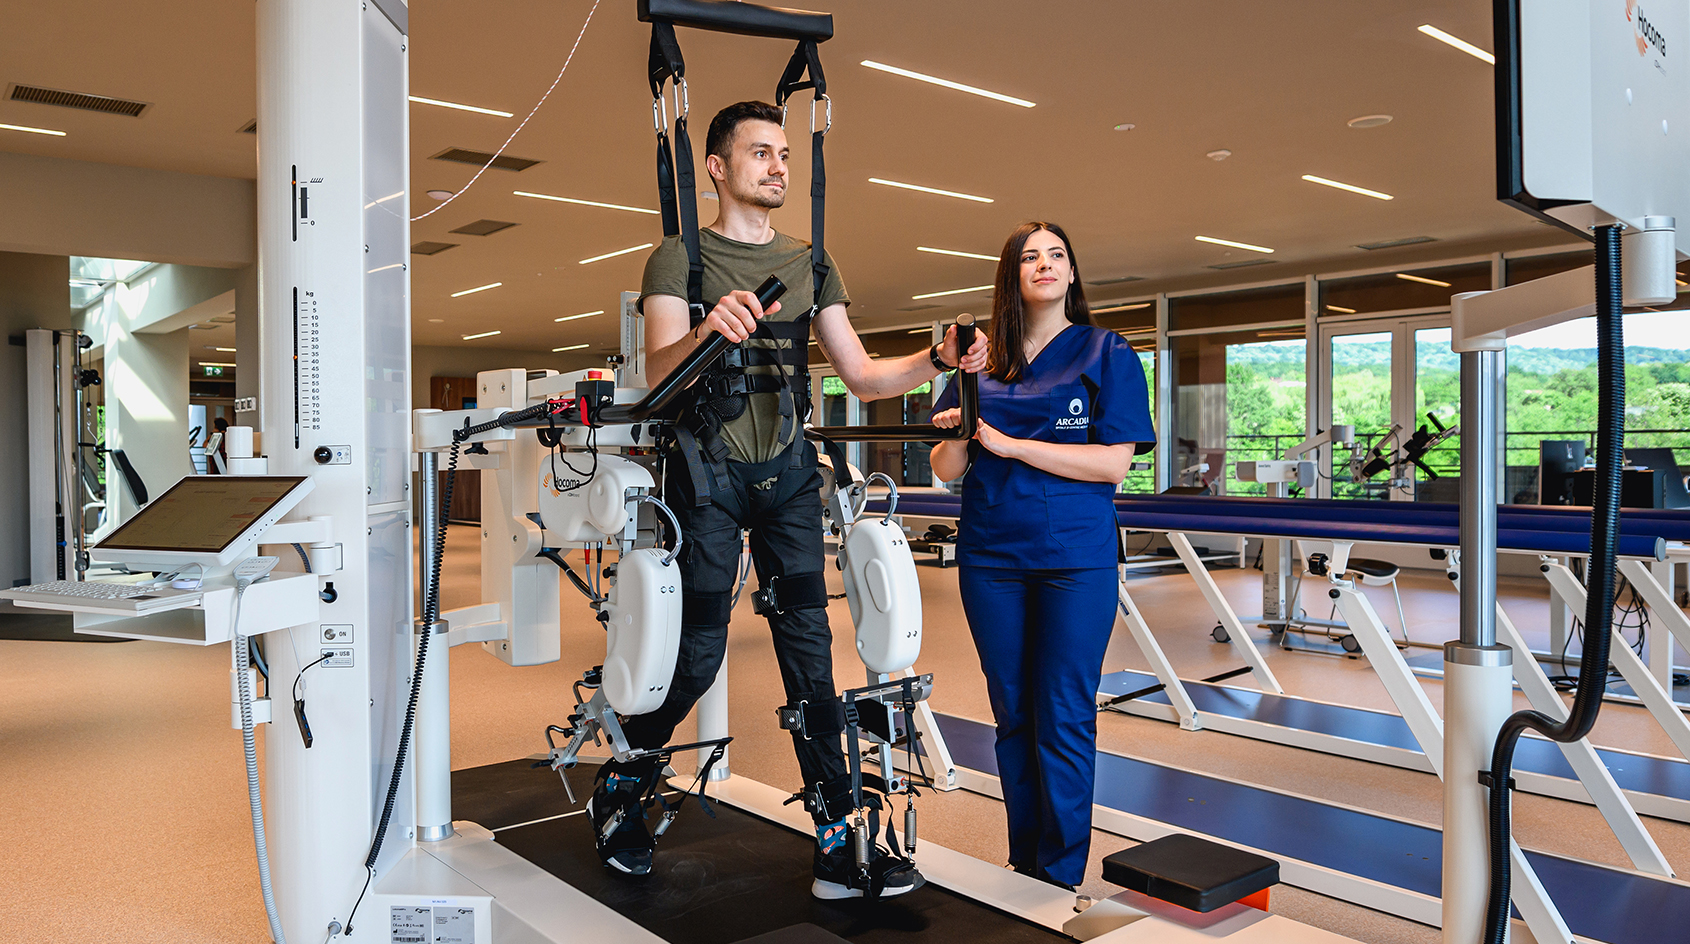 Spitalul de Recuperare Medicală Arcadia: terapia ciclului de mers asistată robotic